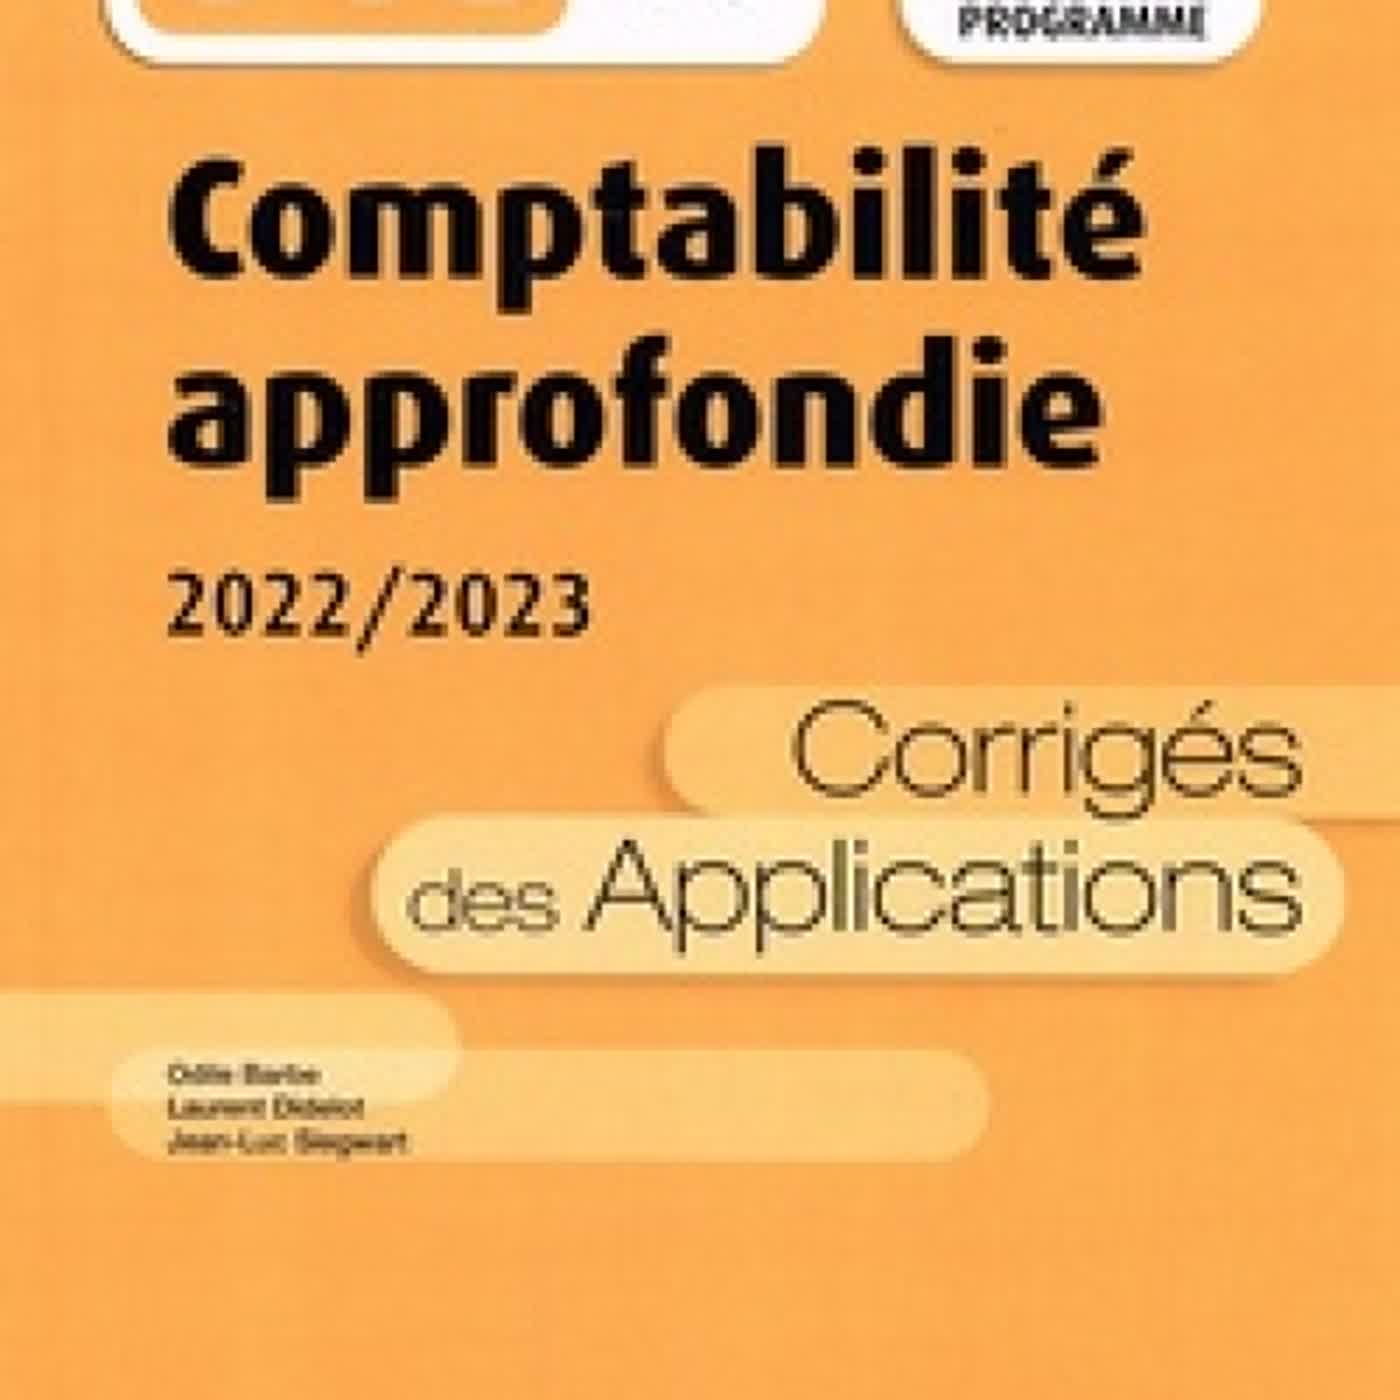 [PDF/Kindle] Comptabilité approfondie DCG 10  - Corrigés des applications by Odile Barbe, Laurent Didelot, Jean-Luc Siegwart